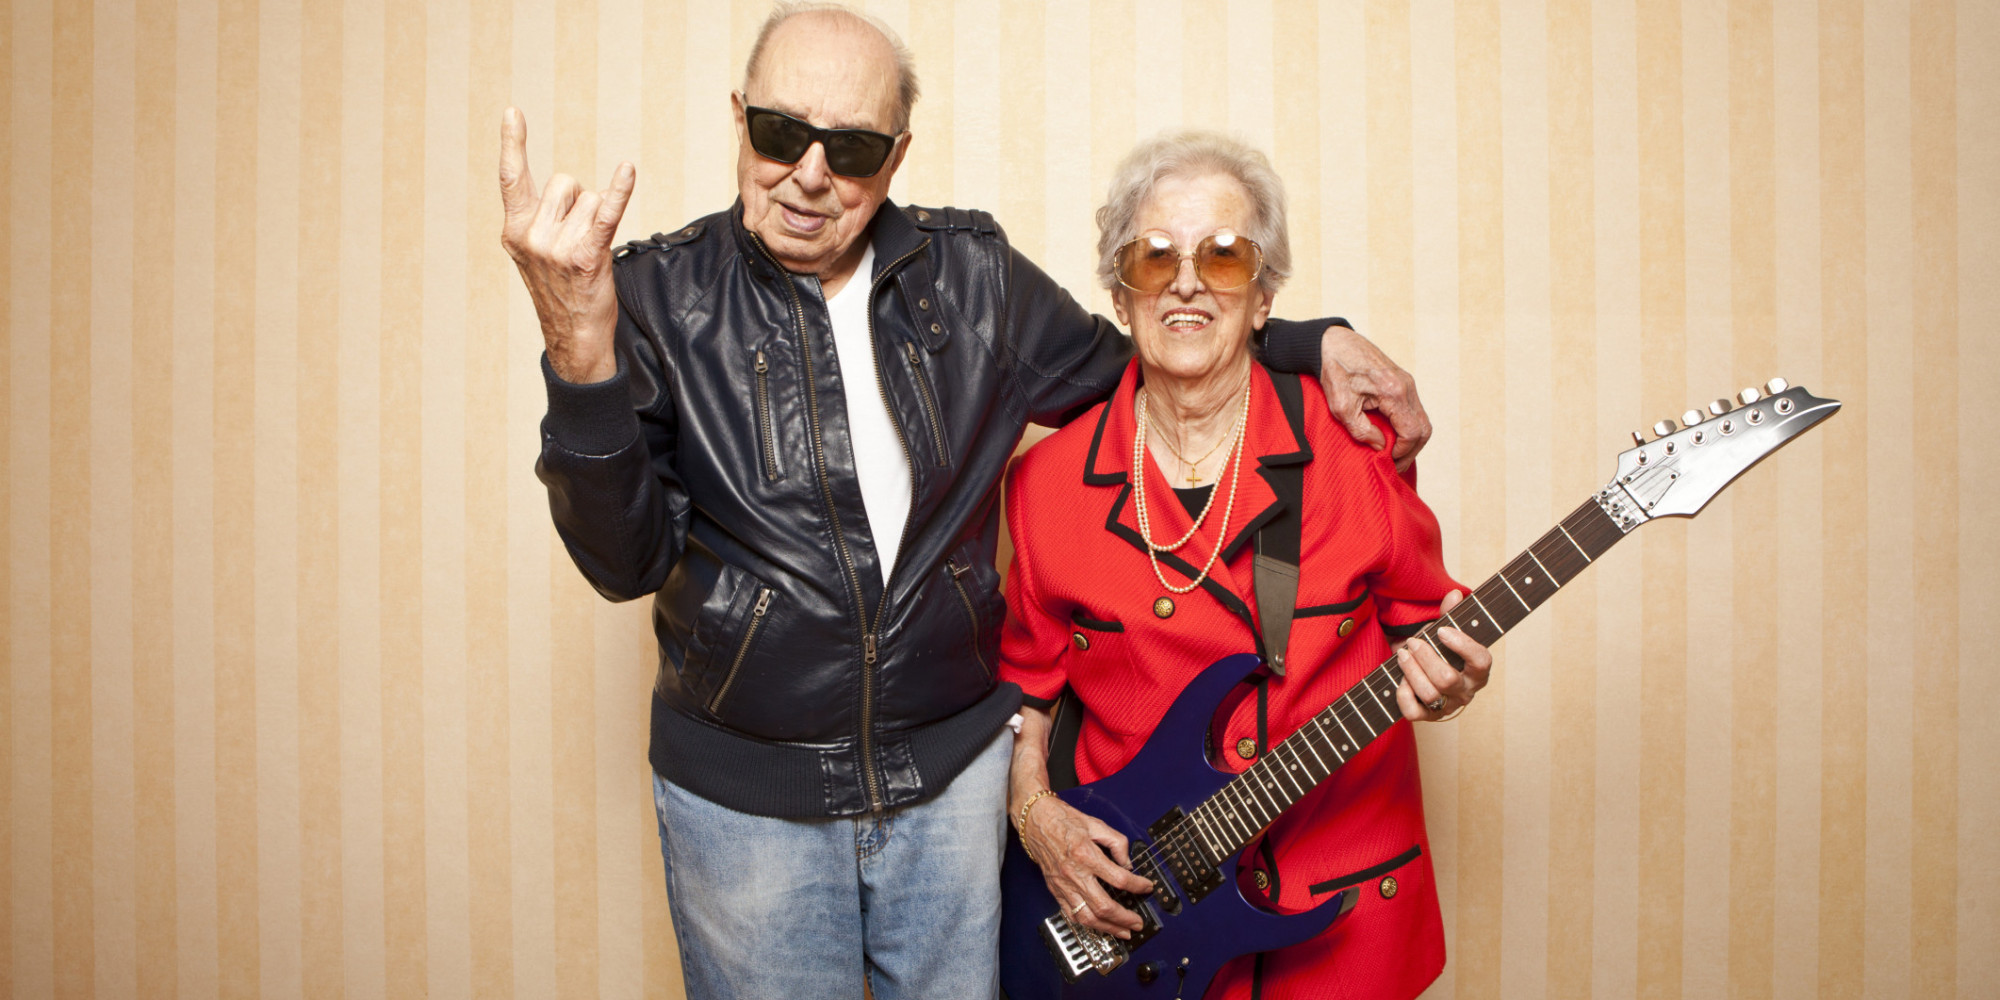 Dos ancianos escaparon de asilo para asistir a concierto de heavy metal en Alemania